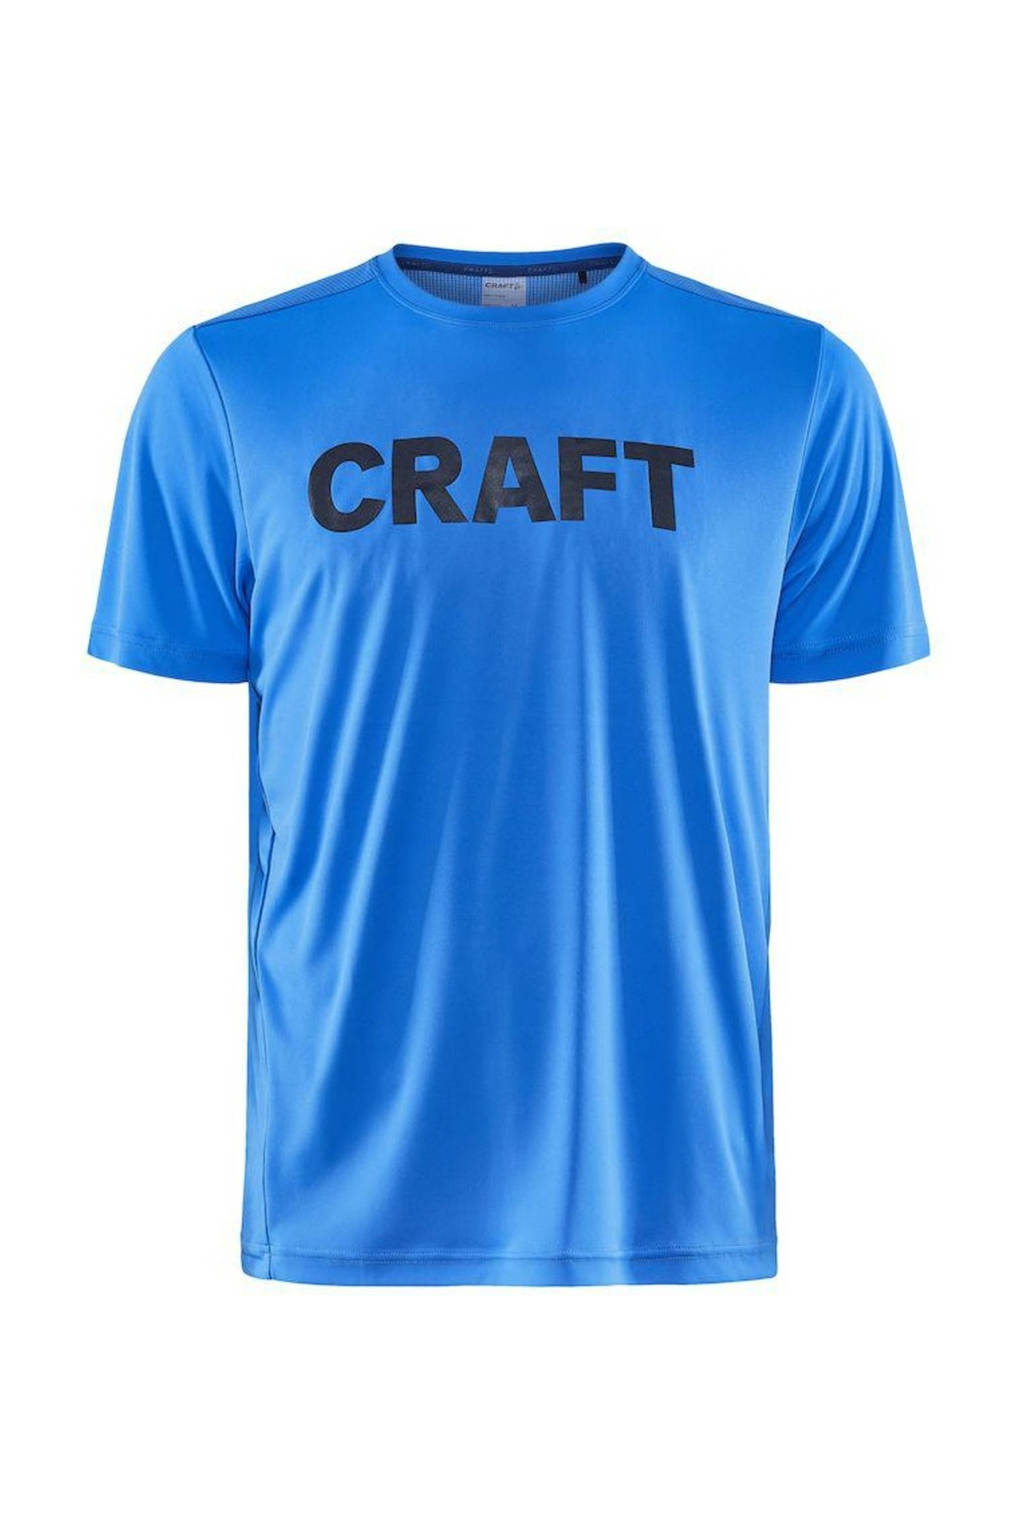 Blauwe heren Craft sport T-shirt Core Charge van polyester met logo dessin, korte mouwen en ronde hals